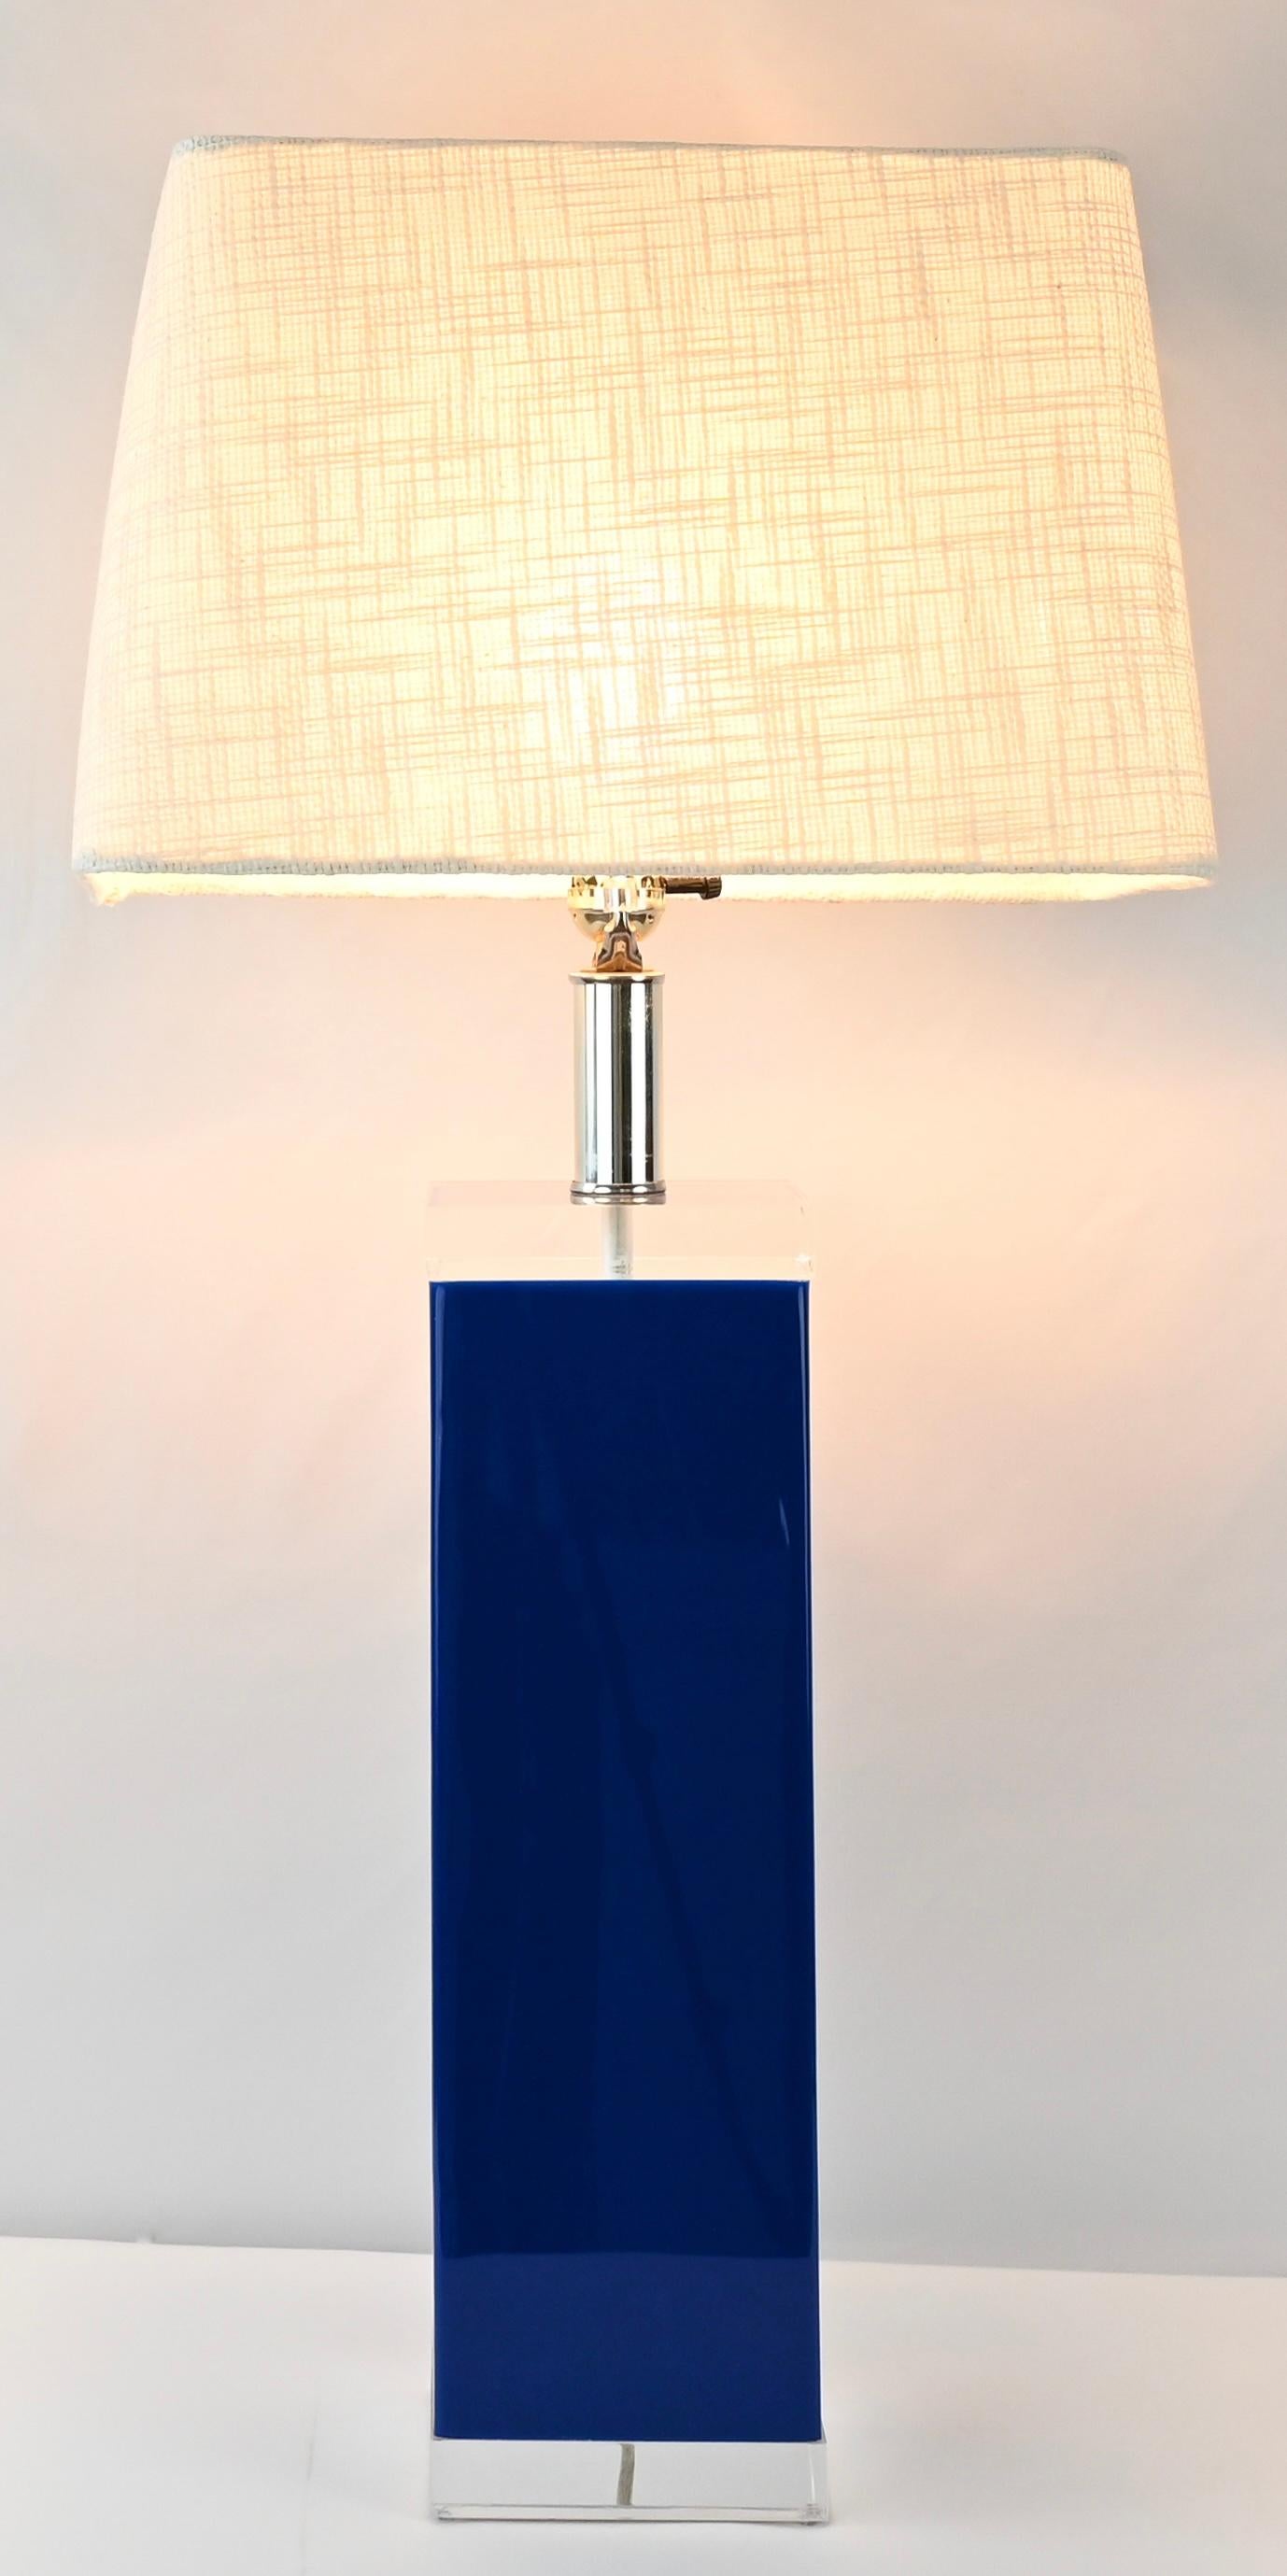 Une paire de lampes de table en lucite de George Bullio de très bonne qualité, conçues et fabriquées avec beaucoup de détails. Très beau cadre en lucite de couleur bleue sur le dessus et le dessous avec des blocs en lucite cristalline. Support